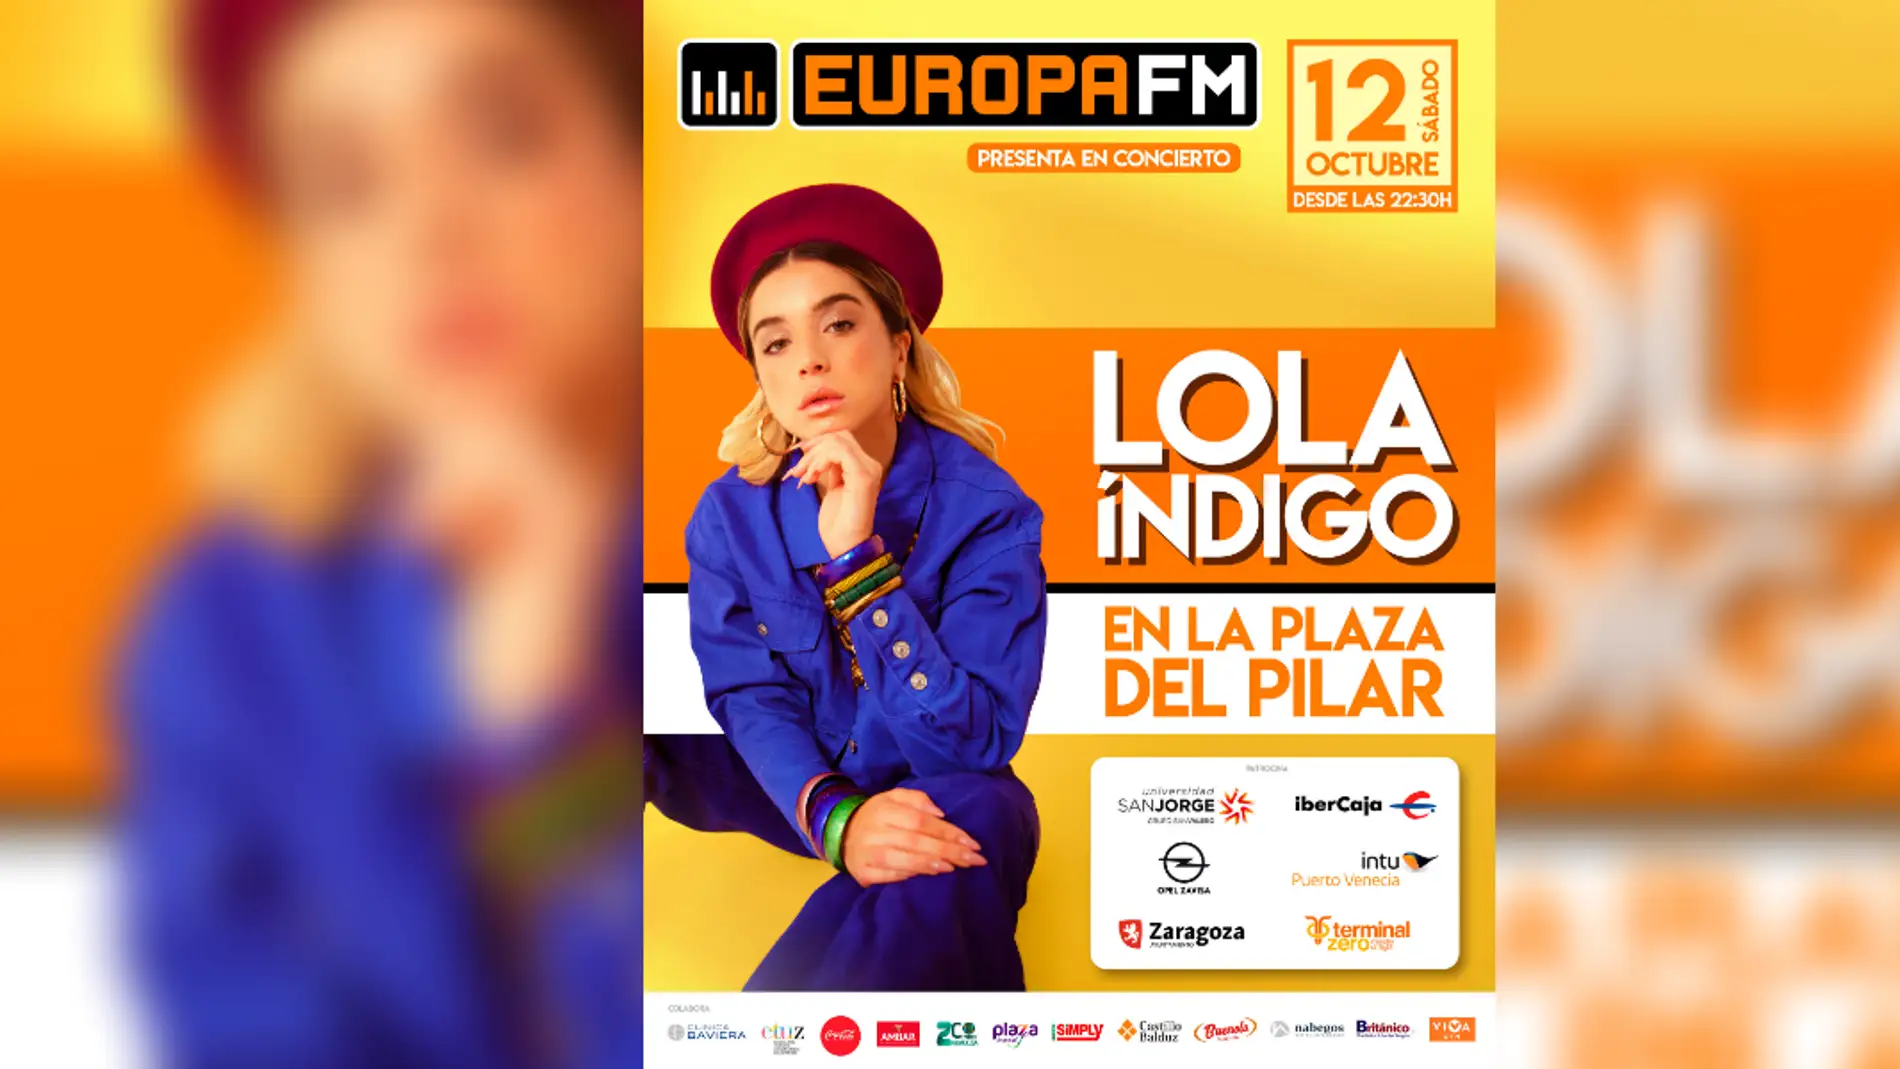 Lola Índigo en el Escenario Europa FM en las Fiestas del Pilar 2019